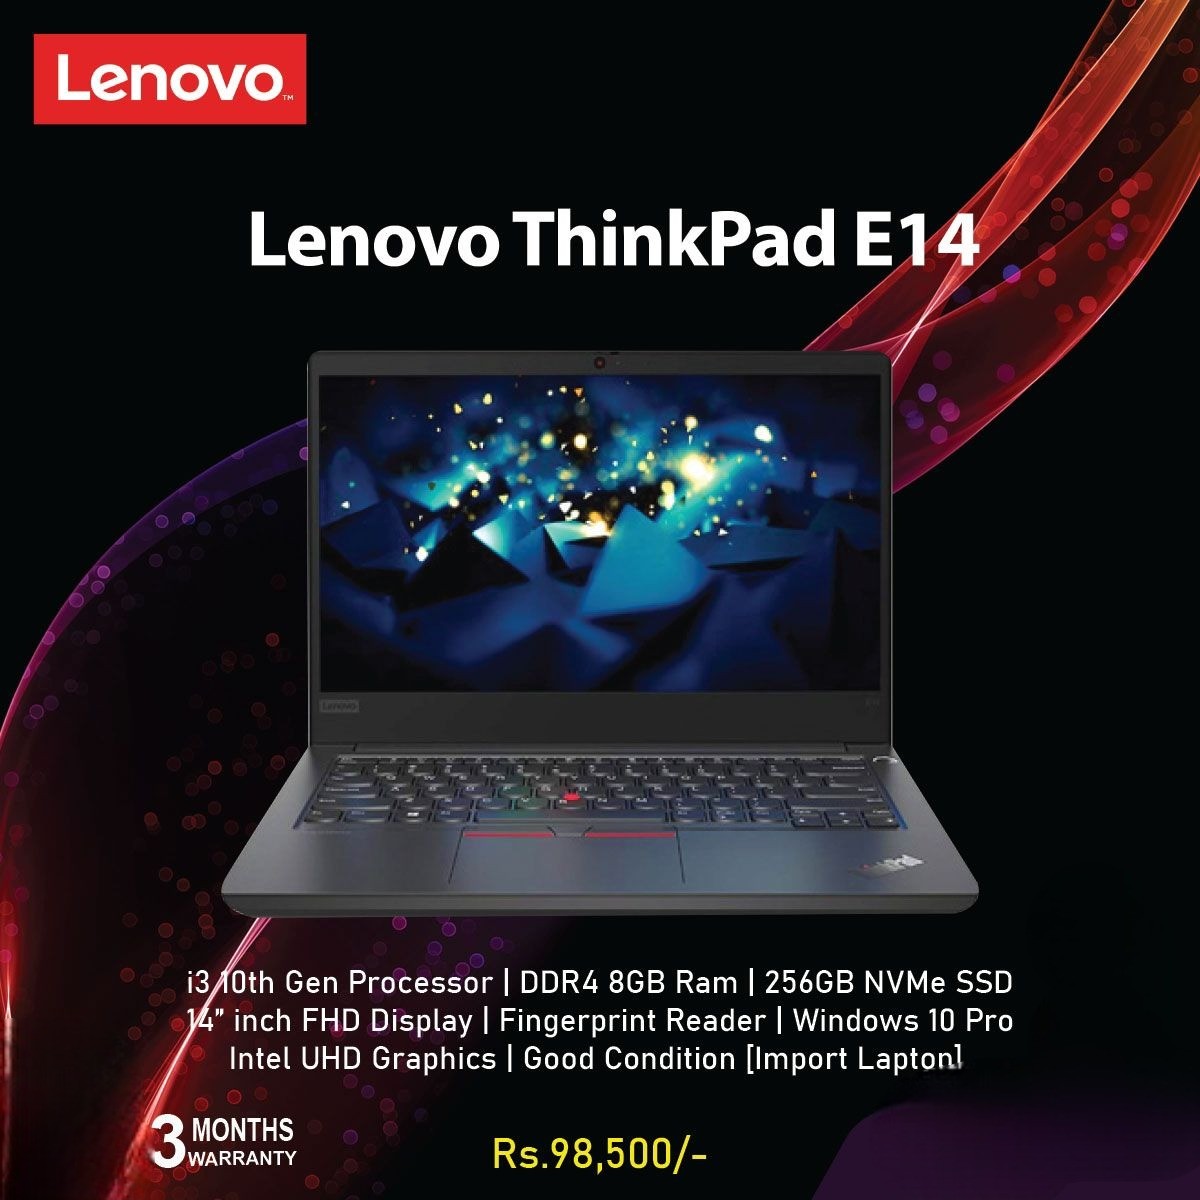 Lenovo ThinkPad E14 i3 10th Gen Laptop